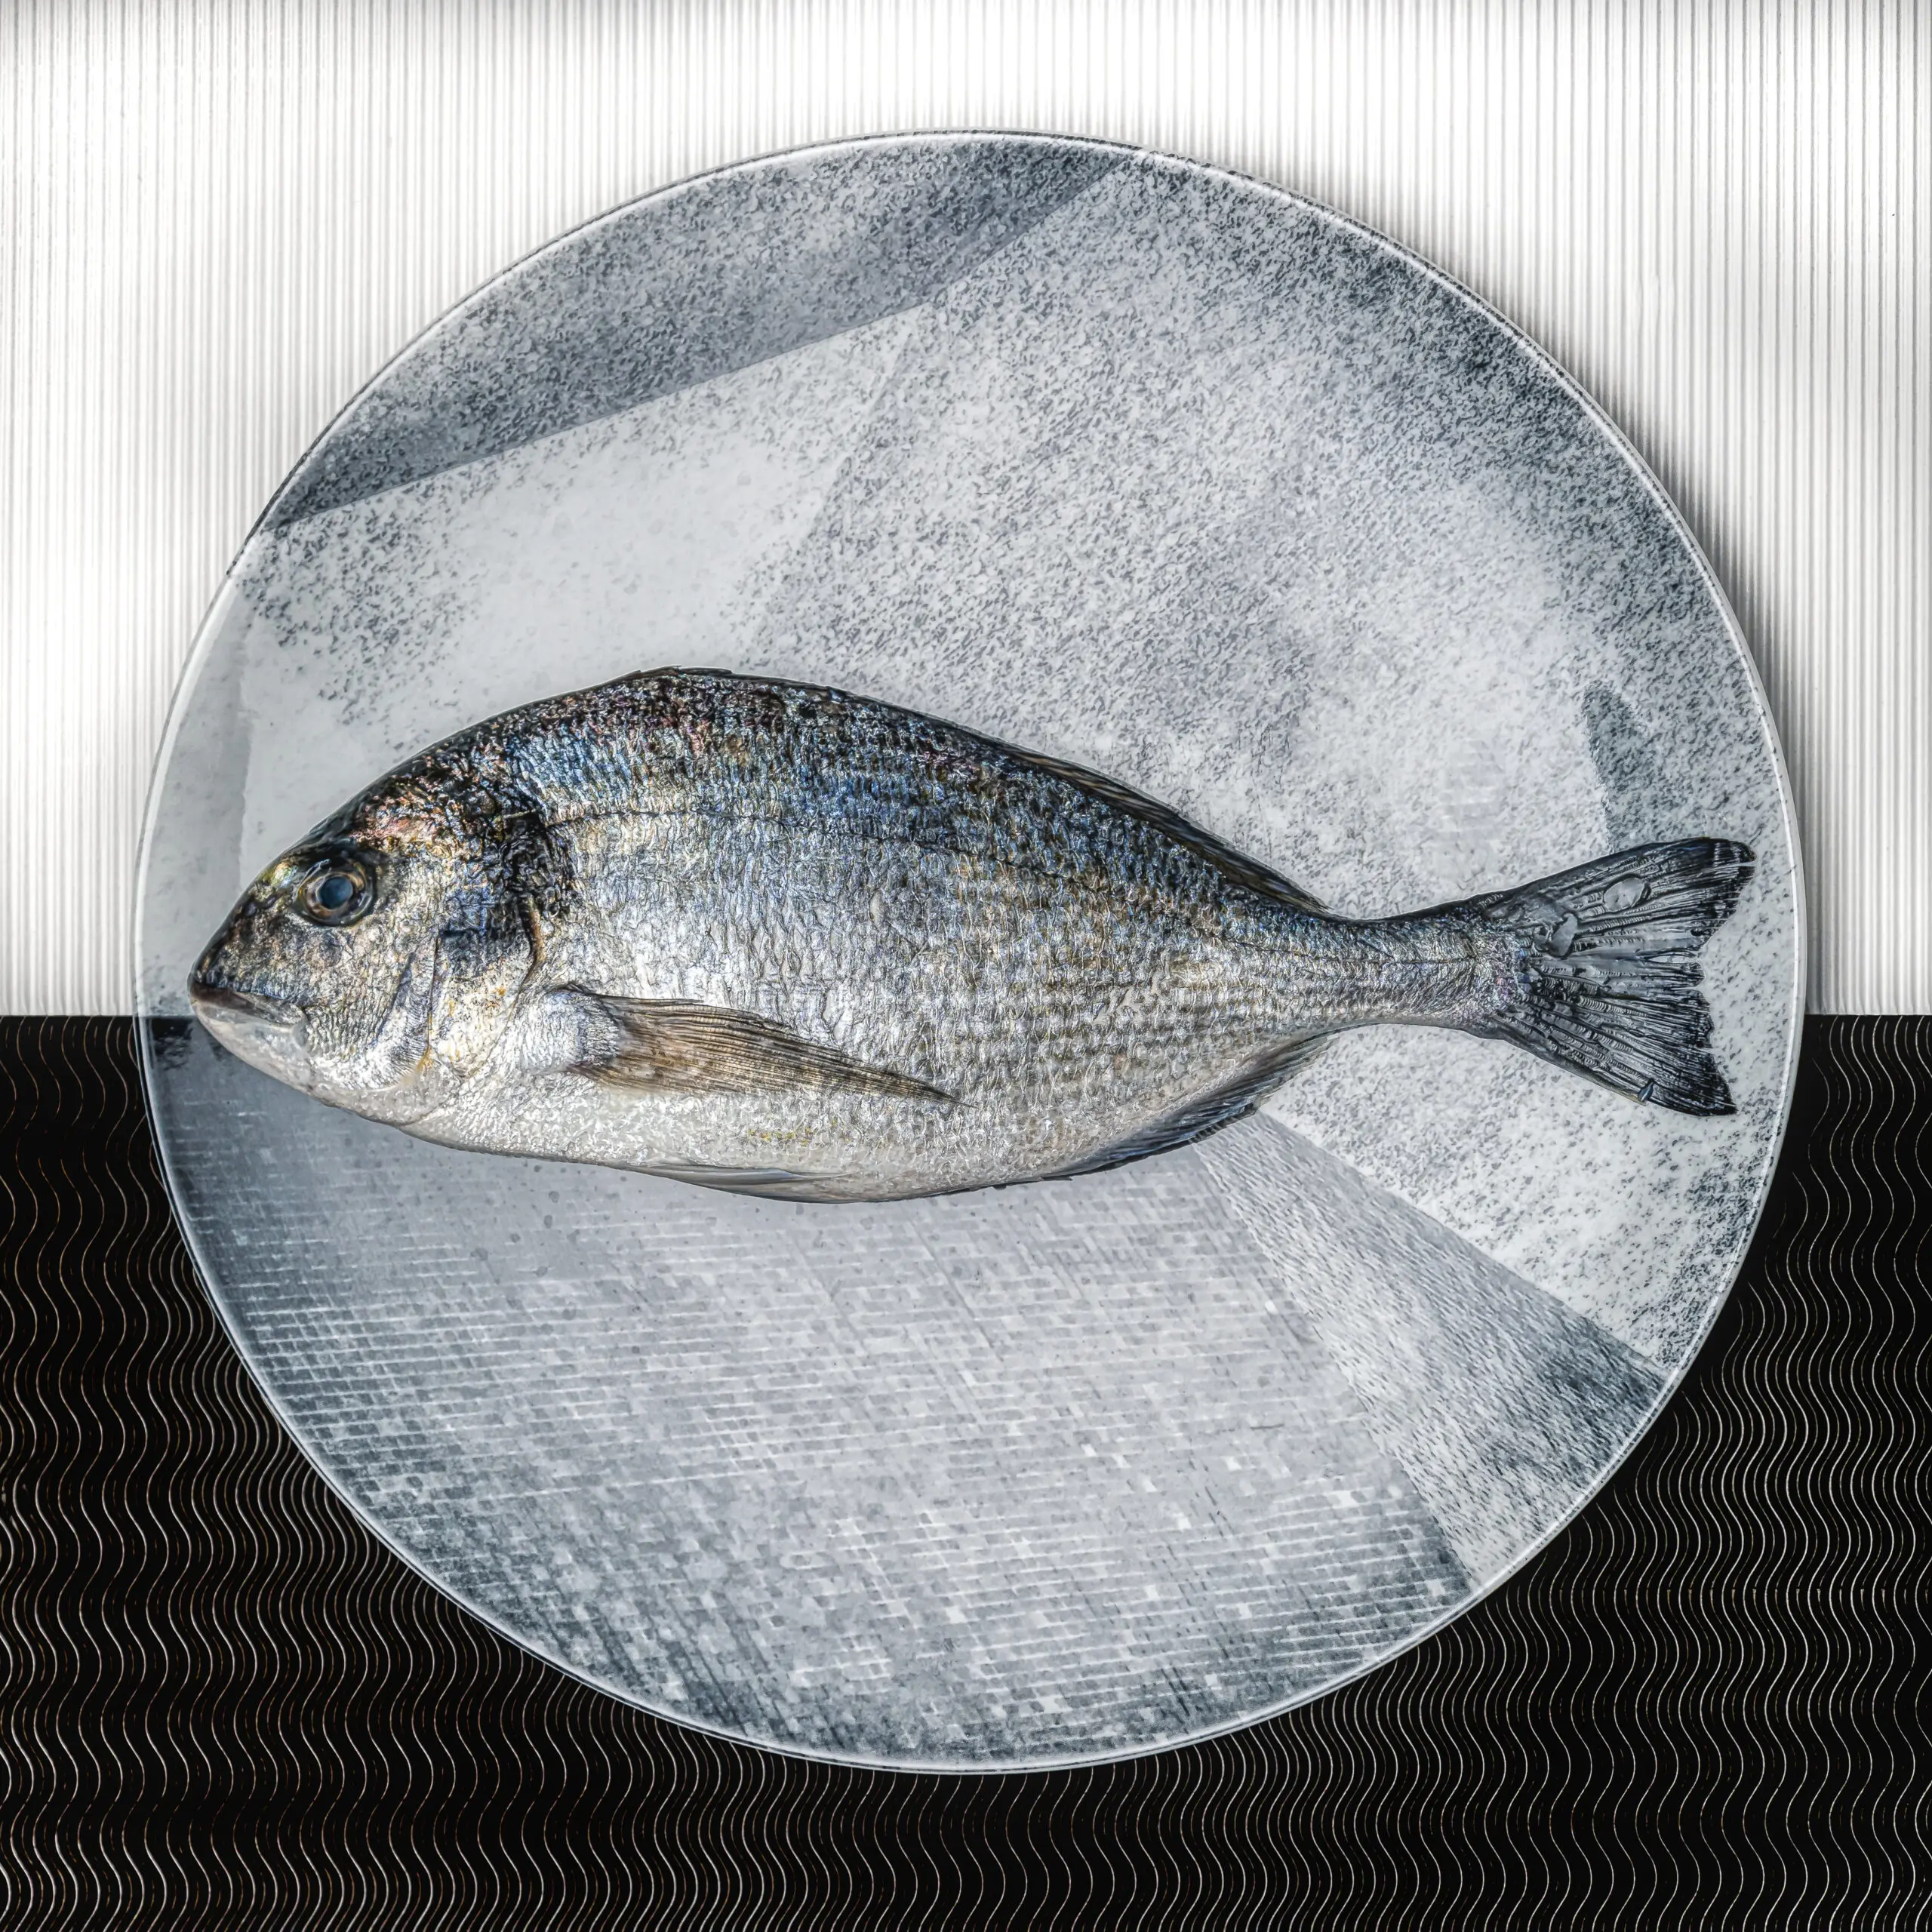 Wandbild (5983) Fisch auf Teller präsentiert: Stillleben,Tiere,Essen und Getränke,Fische